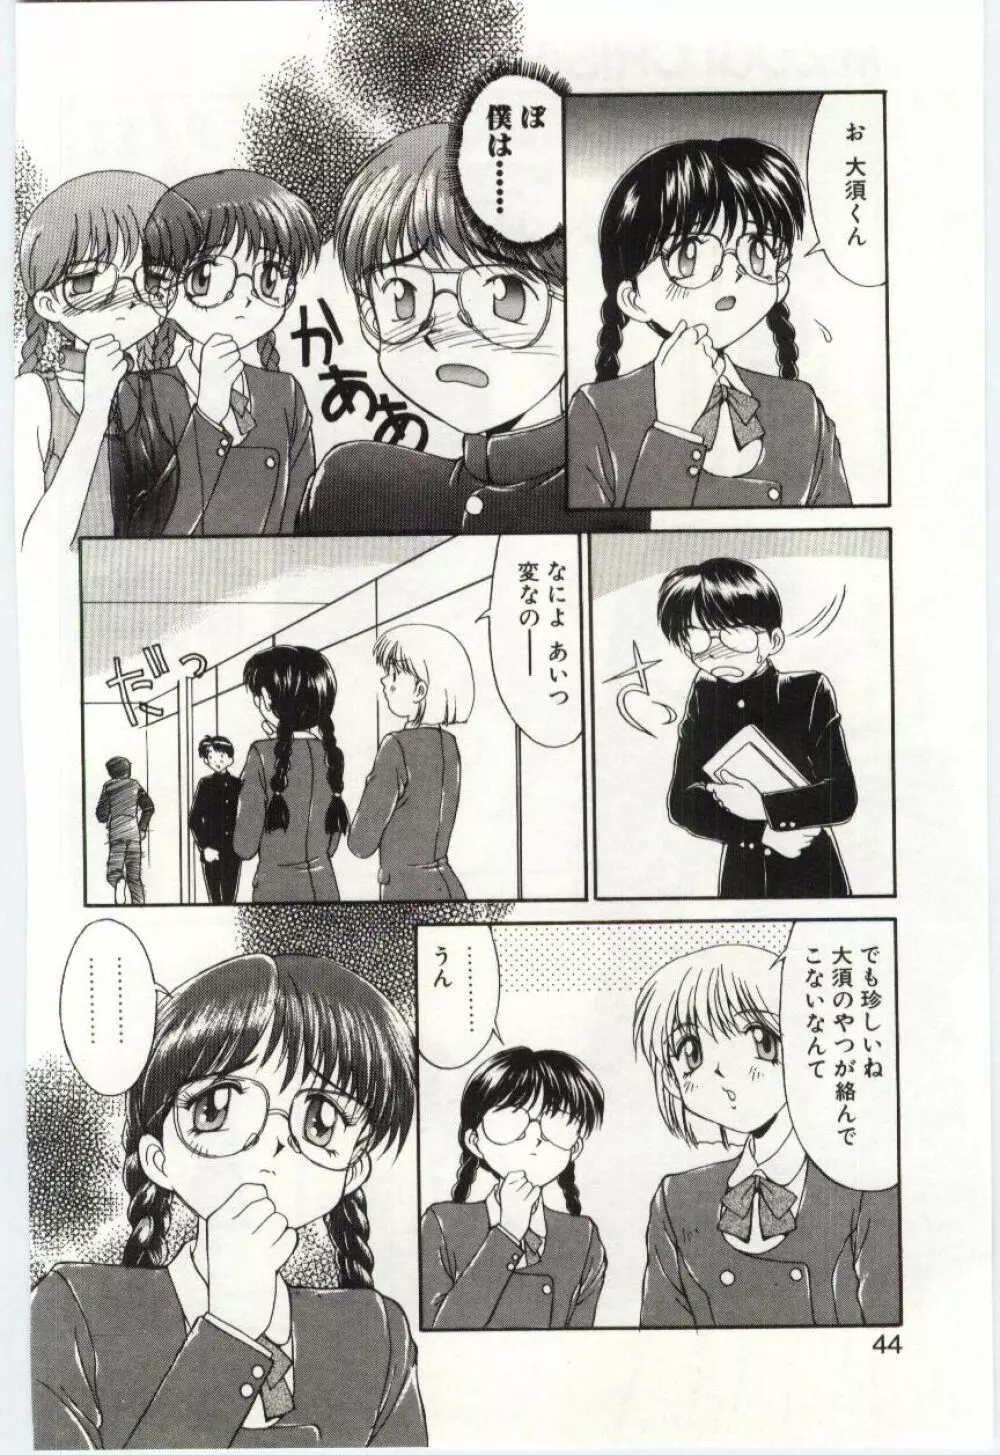 Mizugi Crisis part 1 - JP Page.43